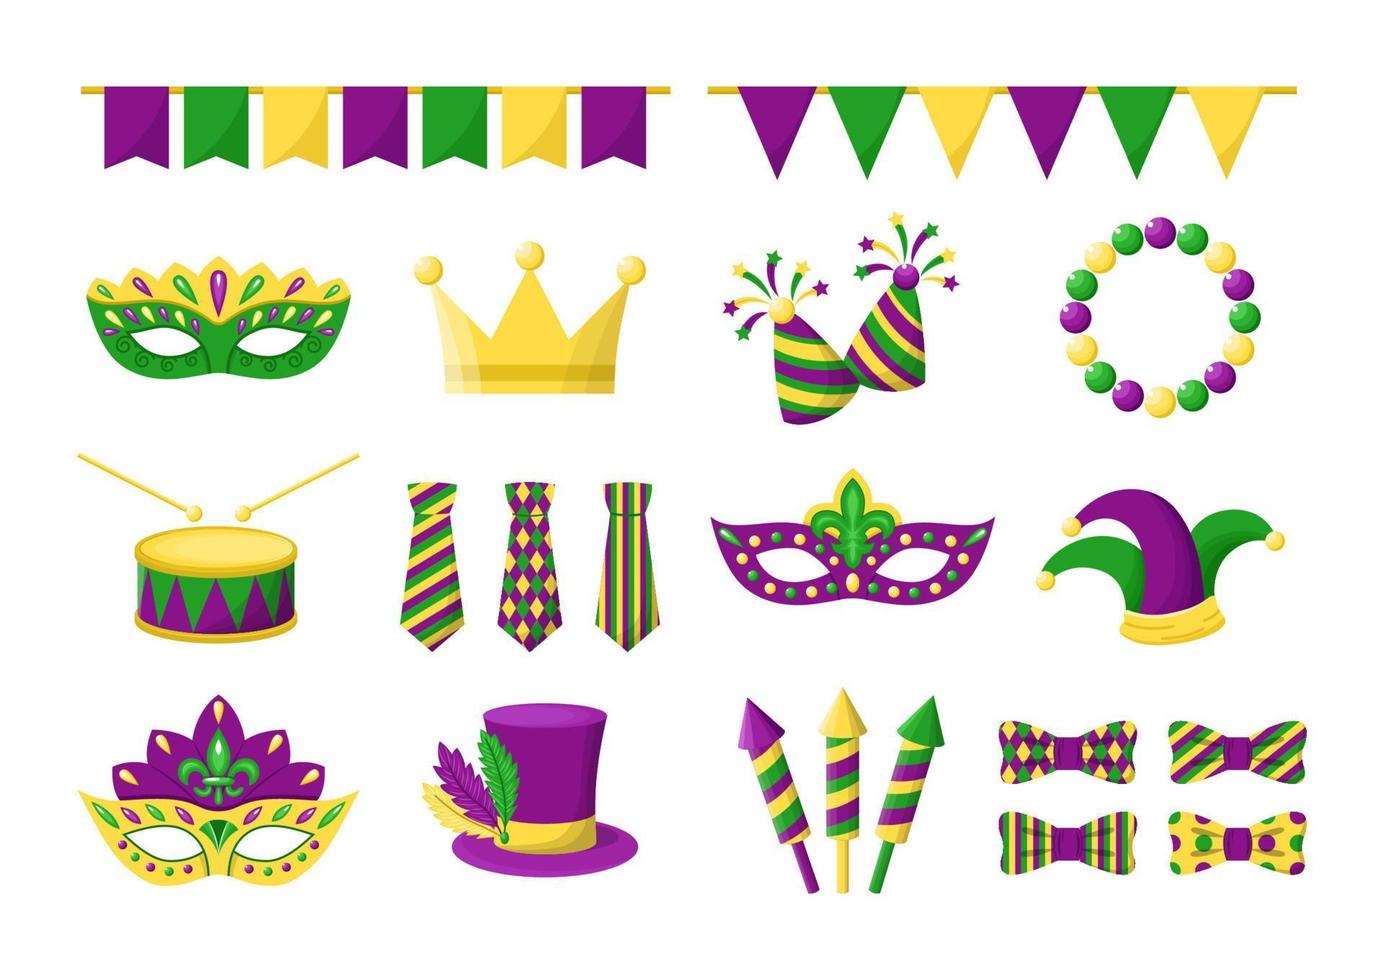 Sammlung von Vektor-Karikaturelementen für Mardi Gras. isolierte karnevalselemente von new orlean in lila, grünen und gelben farben vektor